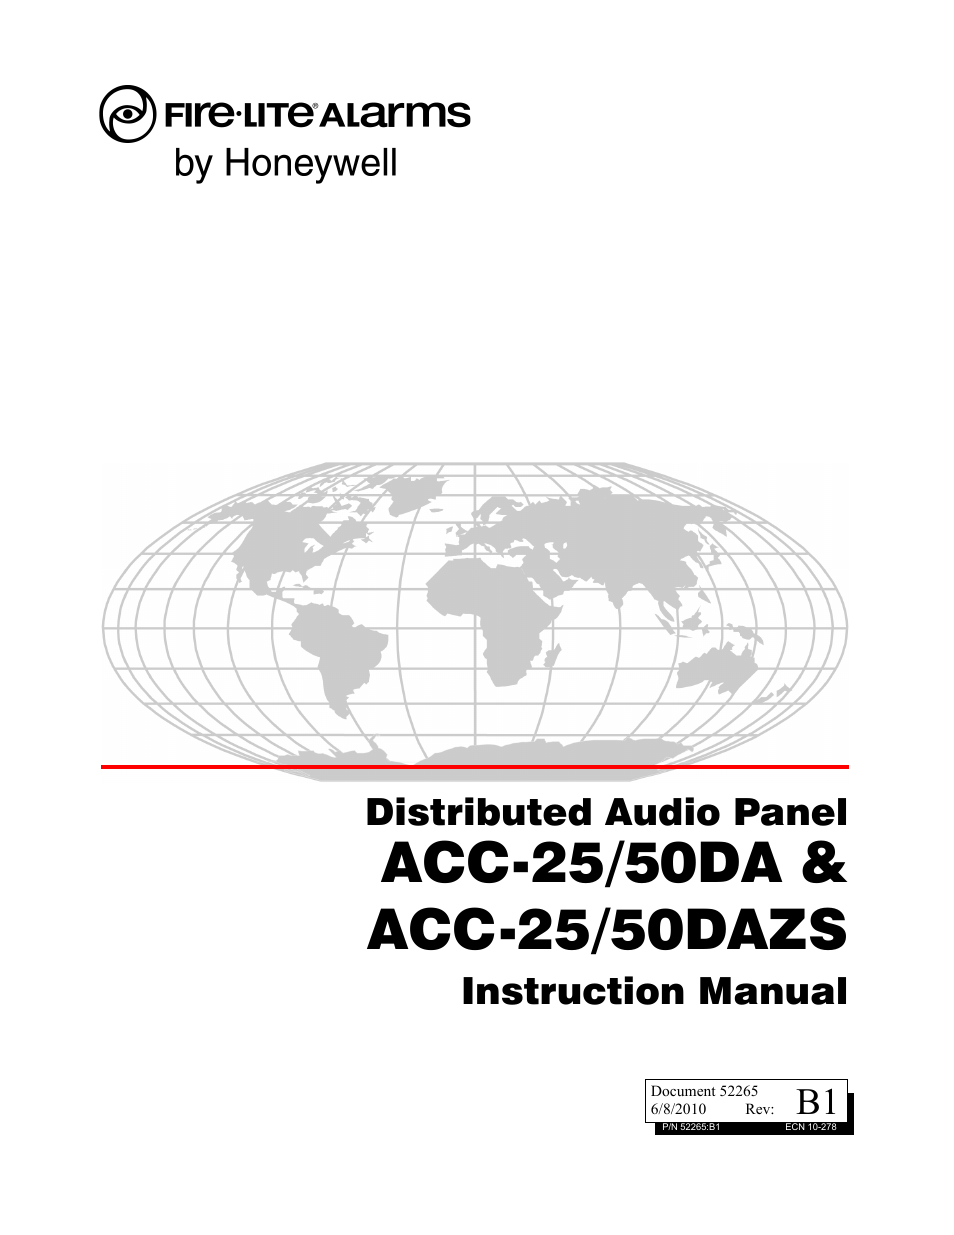 ACC-25/50DA Distributed Audio Panel